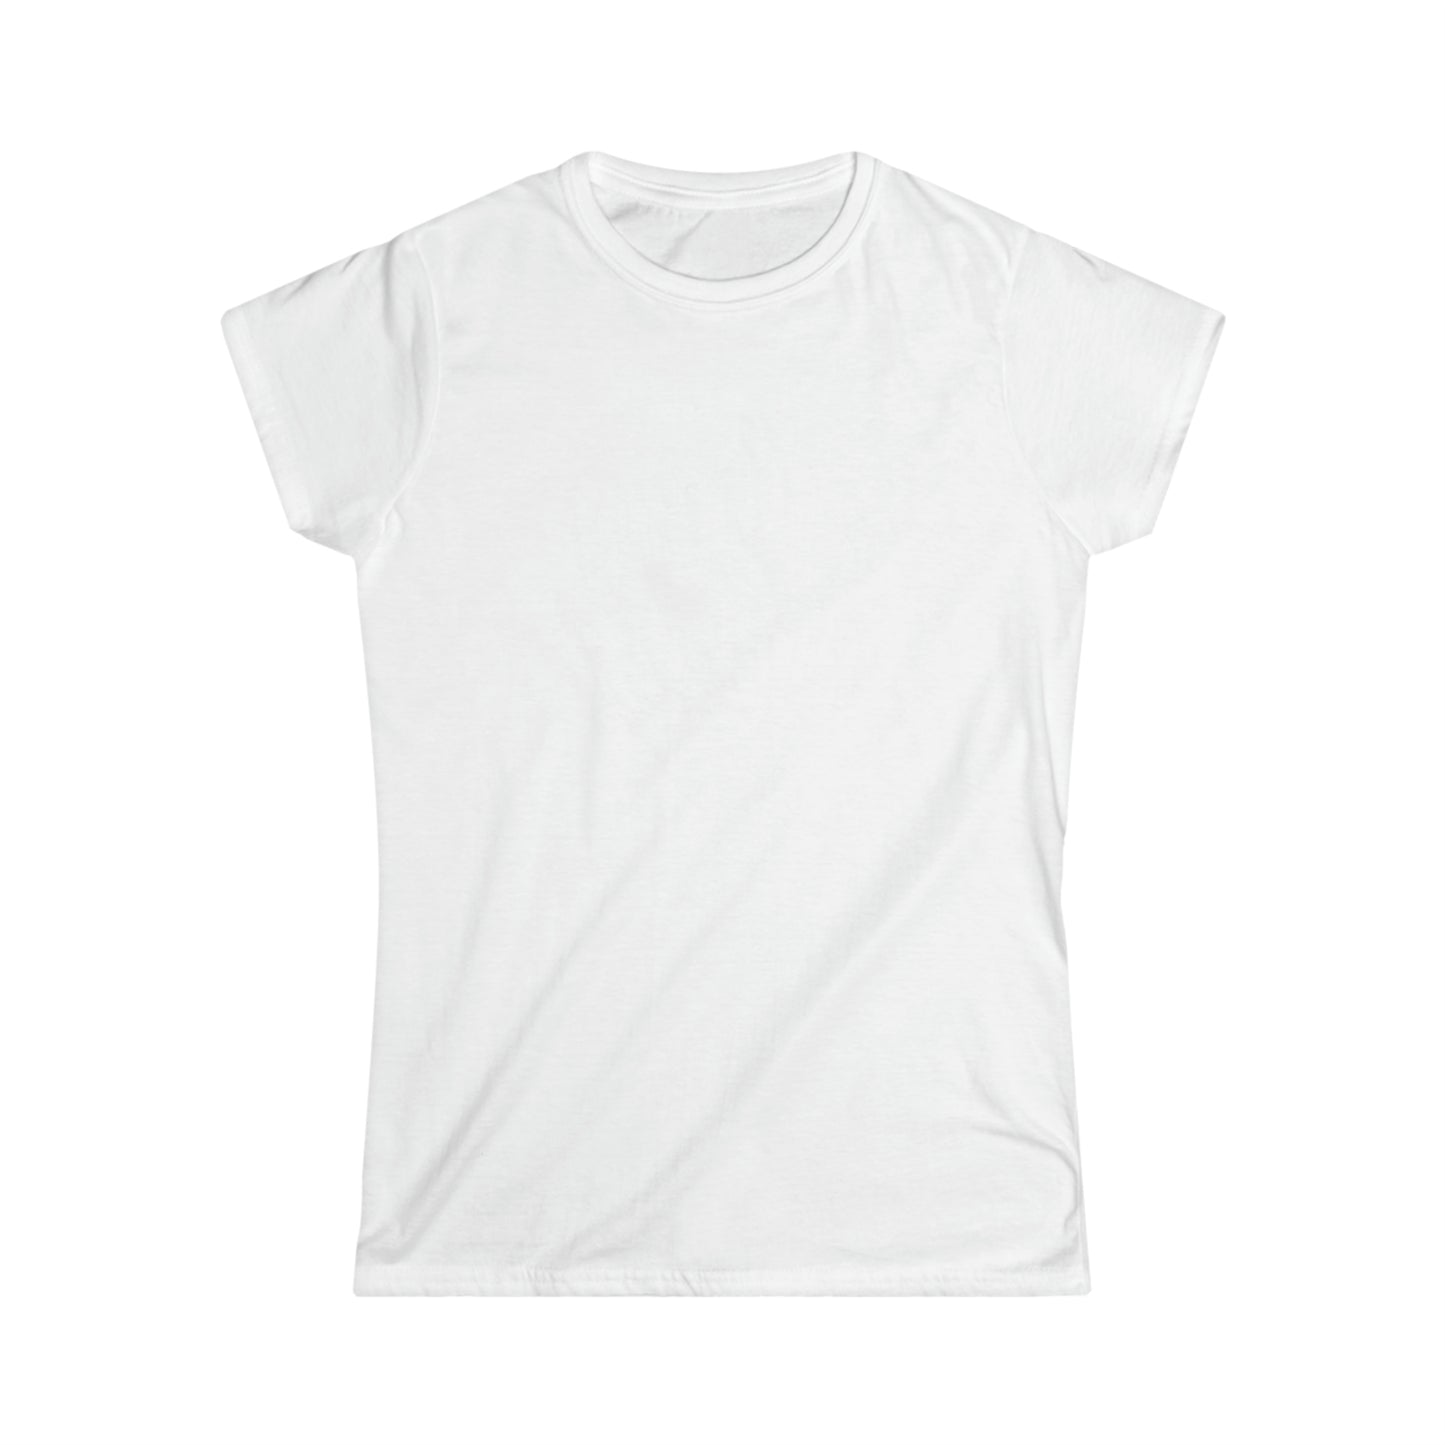 Canyonlands National Park Women's T-Shirt - Arrowhead Design